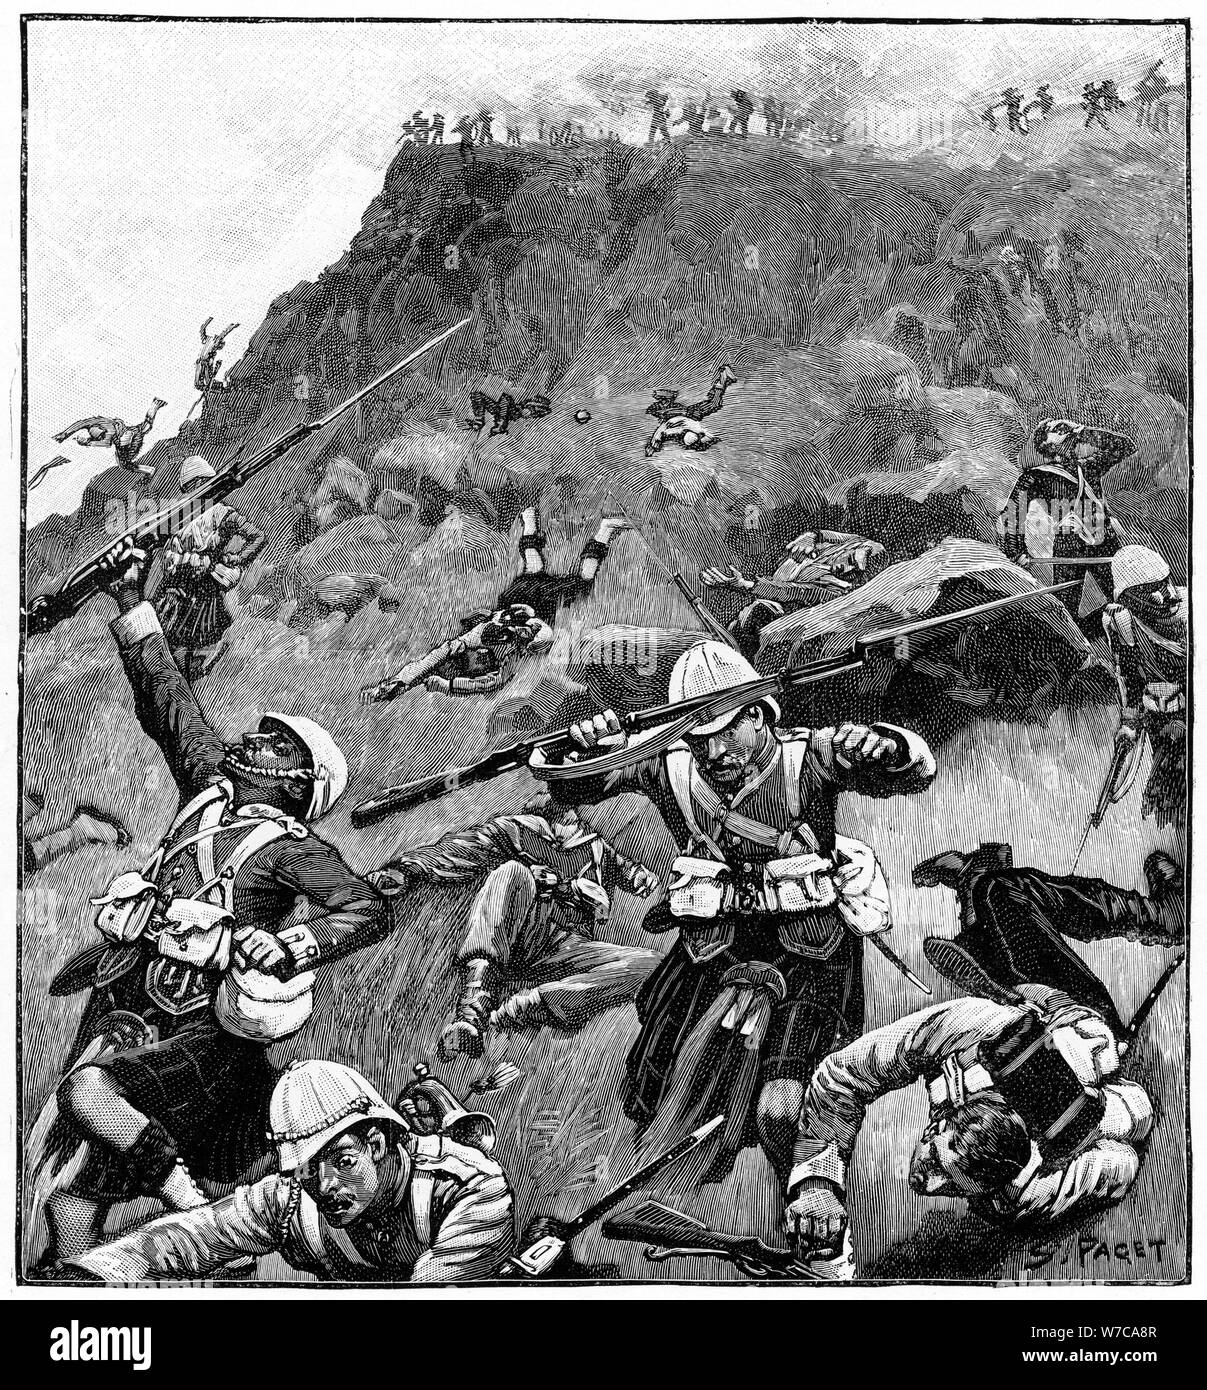 92nd Gordon Highlanders in retreat, Battle of Majuba Hill, 1st Boer War, 26-27 February 1881. Artist: Richard Caton Woodville II Stock Photo